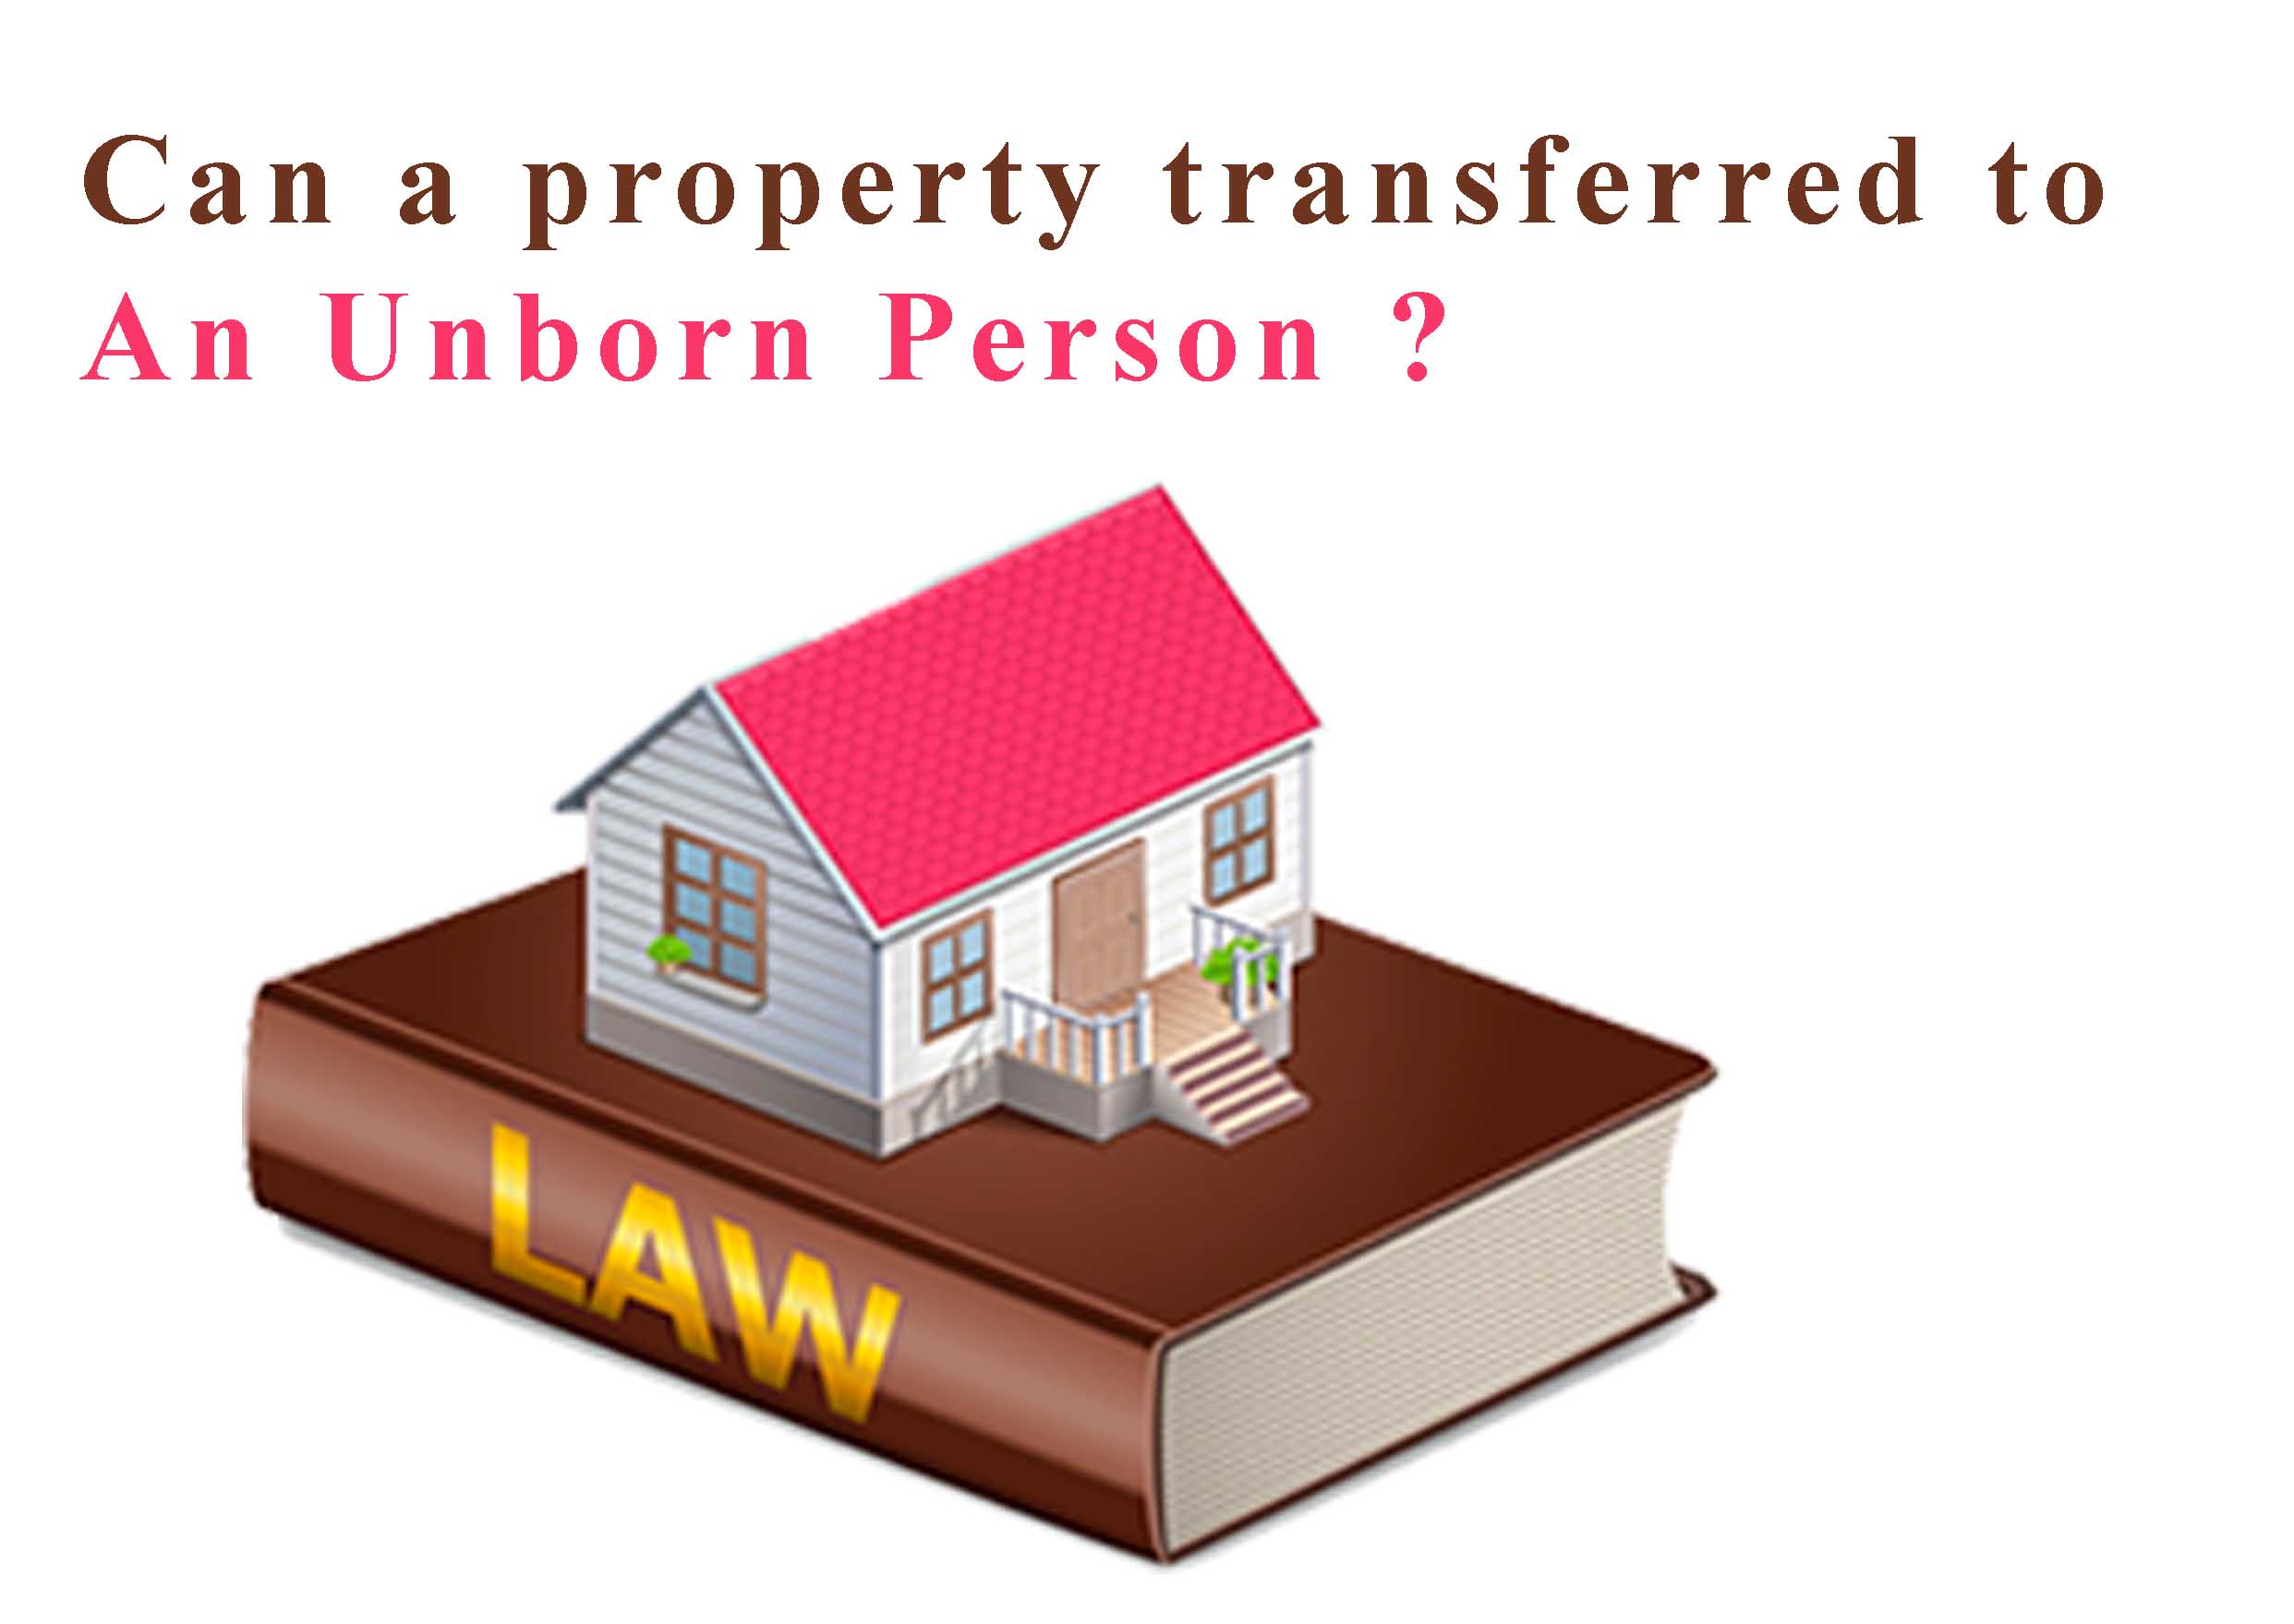 legal status of unborn person